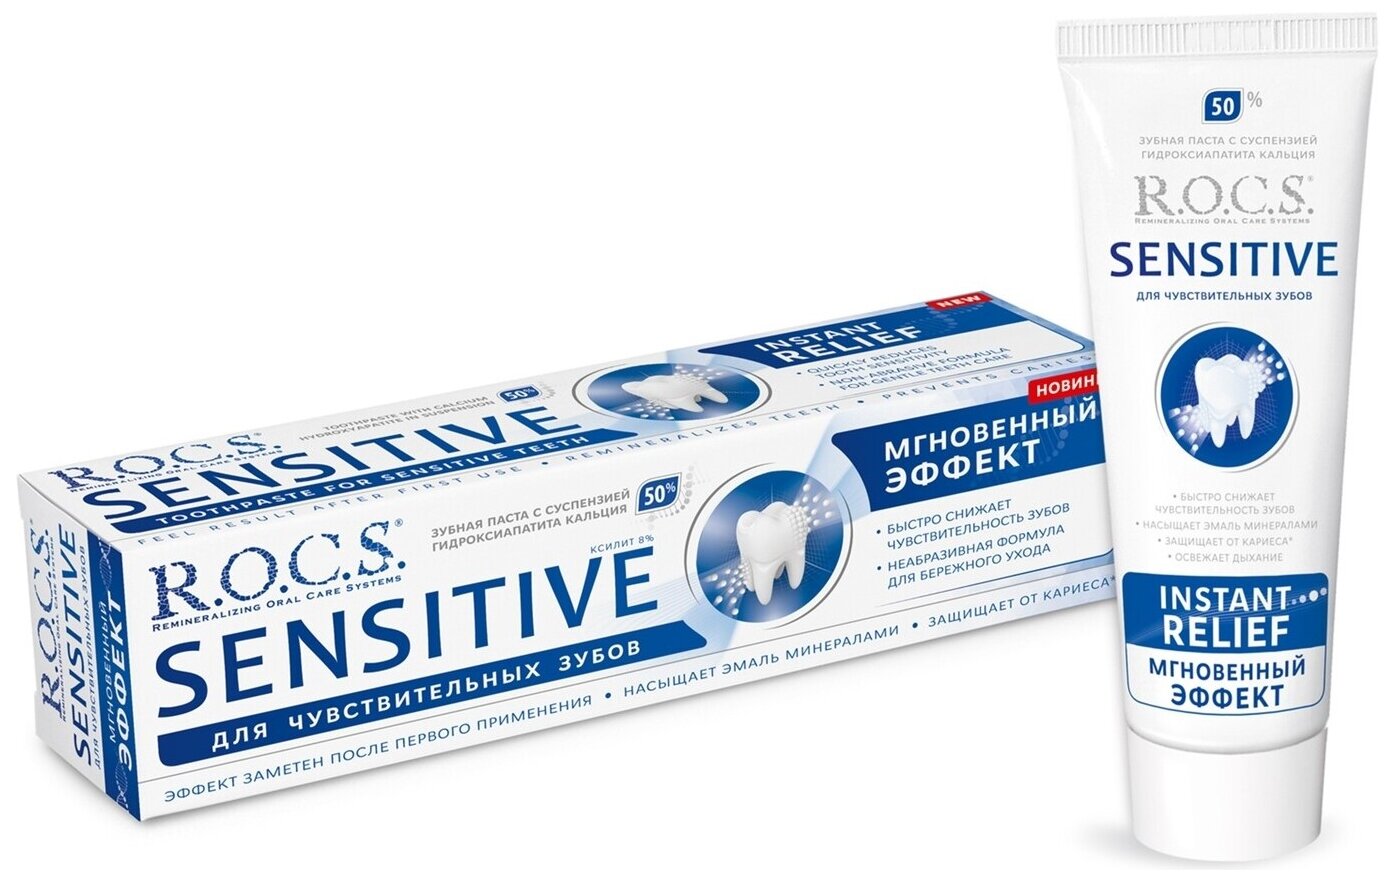 Зубная паста R.O.C.S. Sensitive Мгновенный эффект